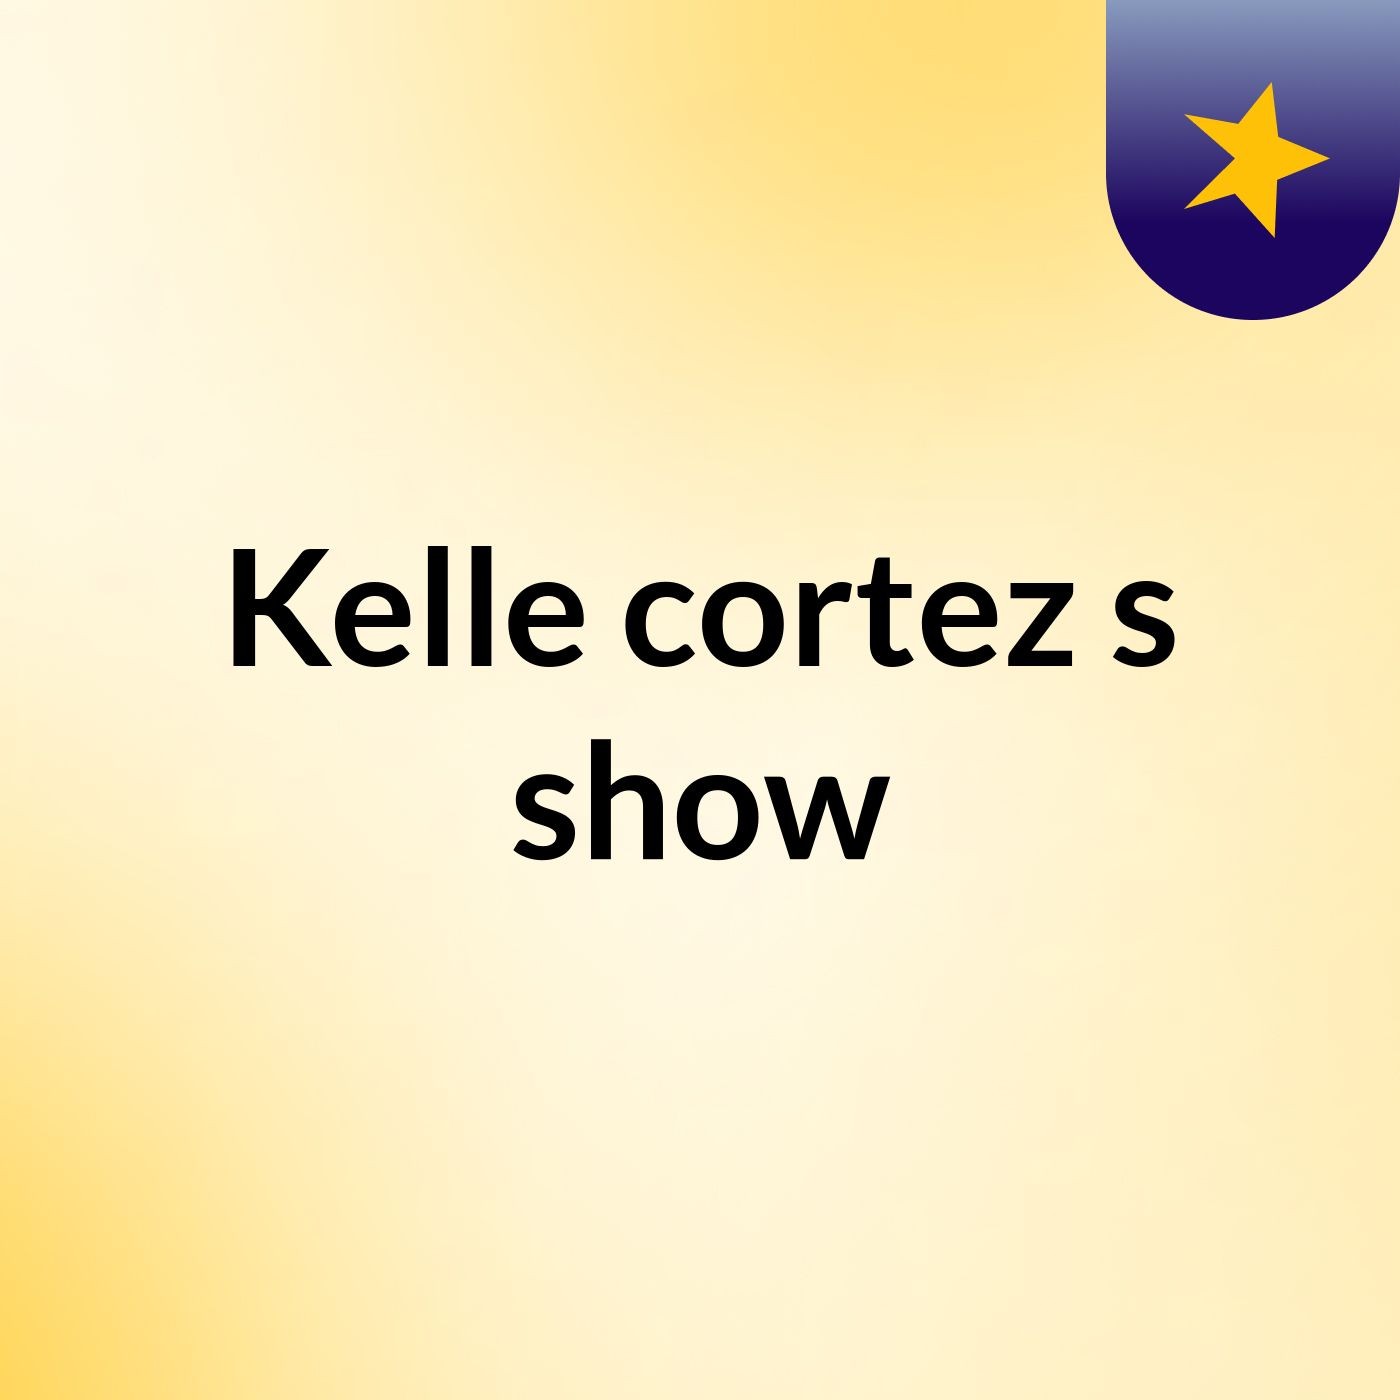 Kelle cortez's show